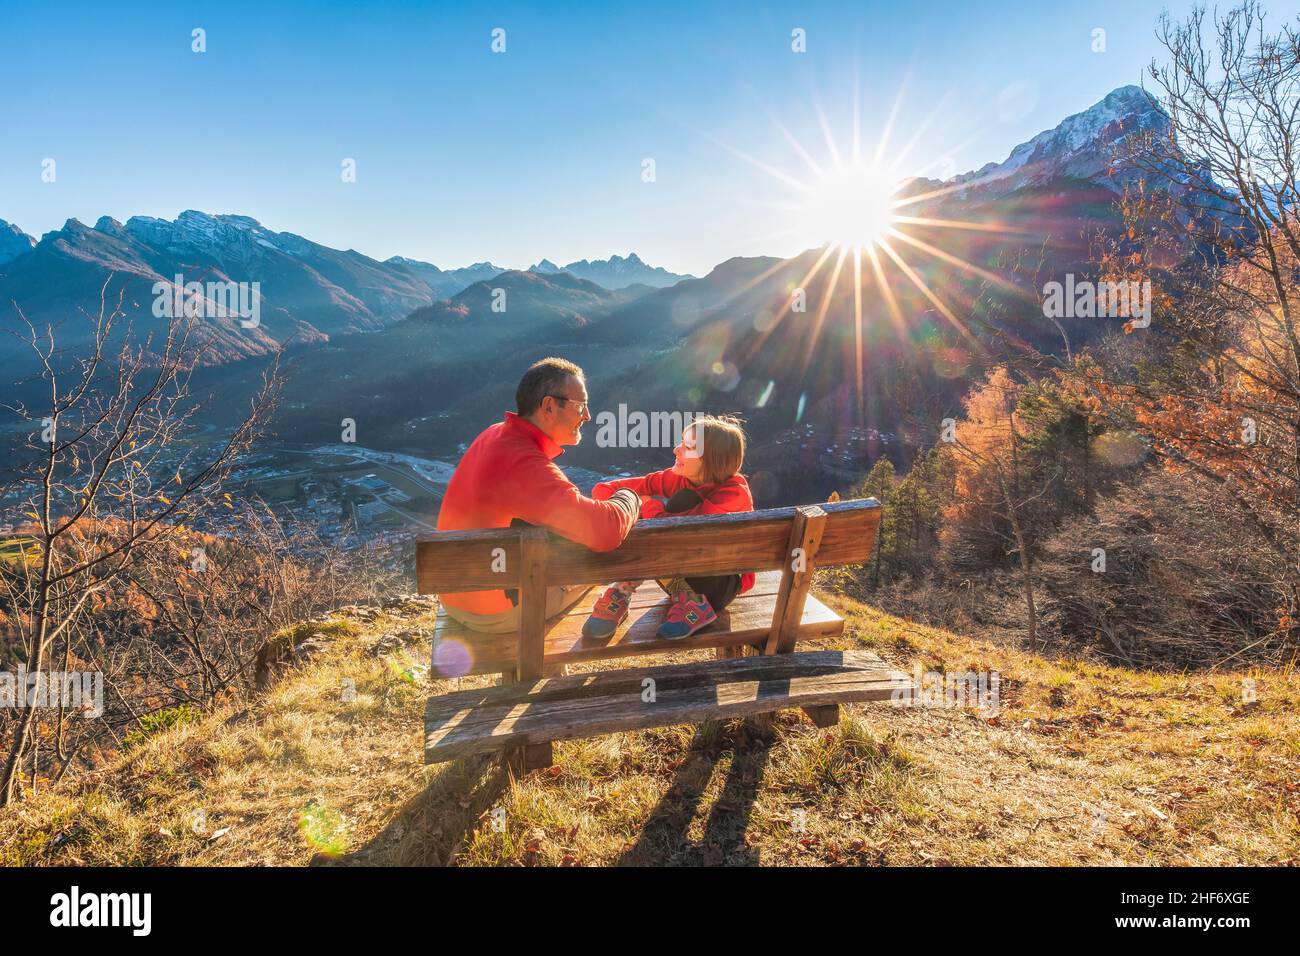 Dos personas (padre e hija) sentados en un banco se ríen y miran a los ojos mientras el sol se pone detrás de ellos, Agordo, provincia de Belluno, Veneto, Italia Foto de stock